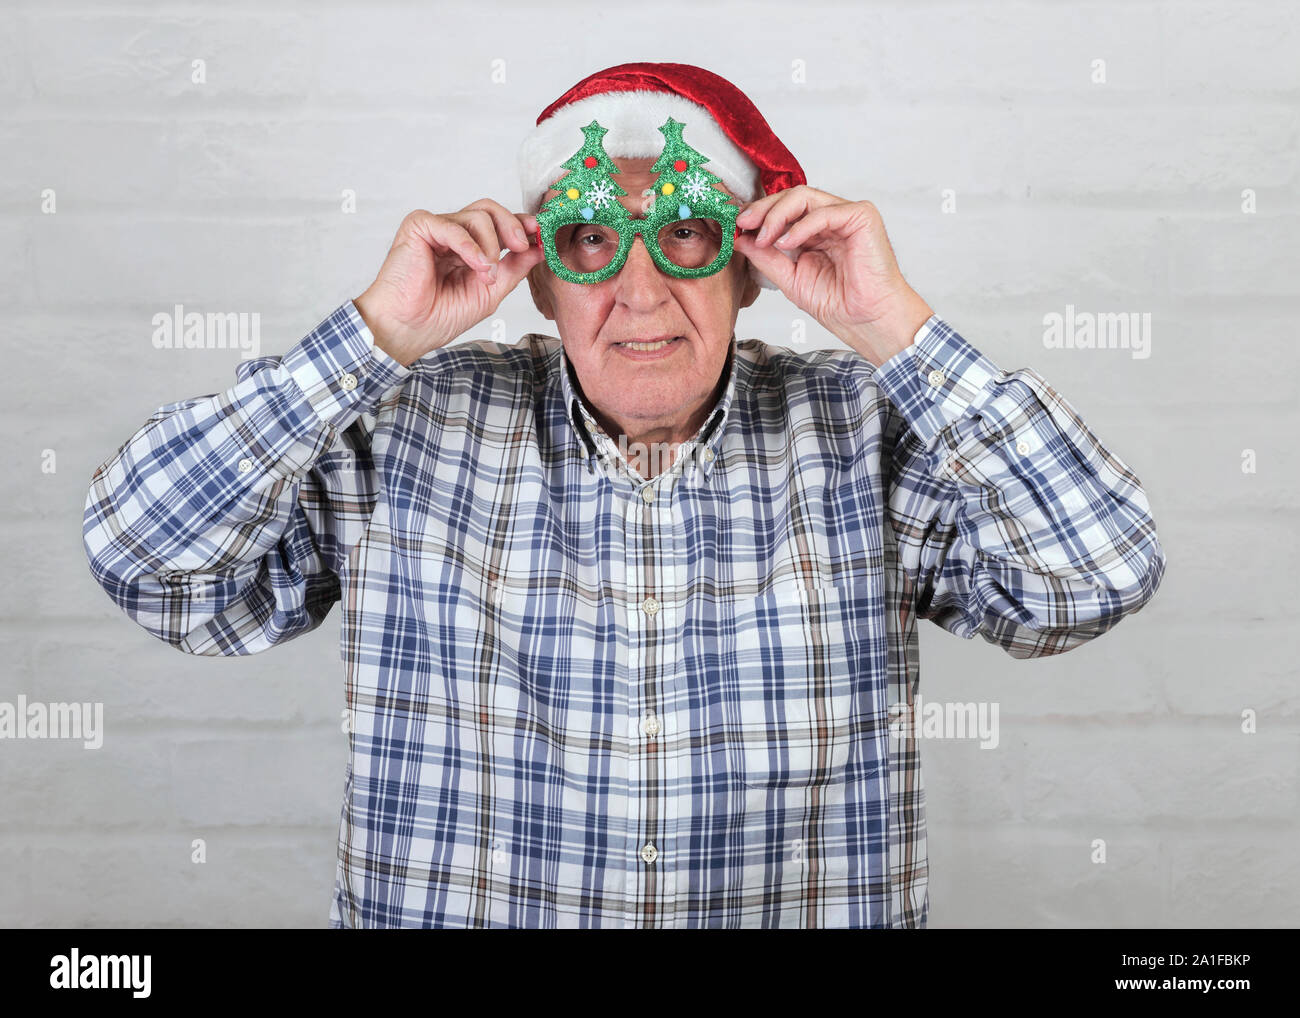 Grand-père Wearing Christmas Santa Claus Hat et drôles de lunettes sur fond brique Banque D'Images